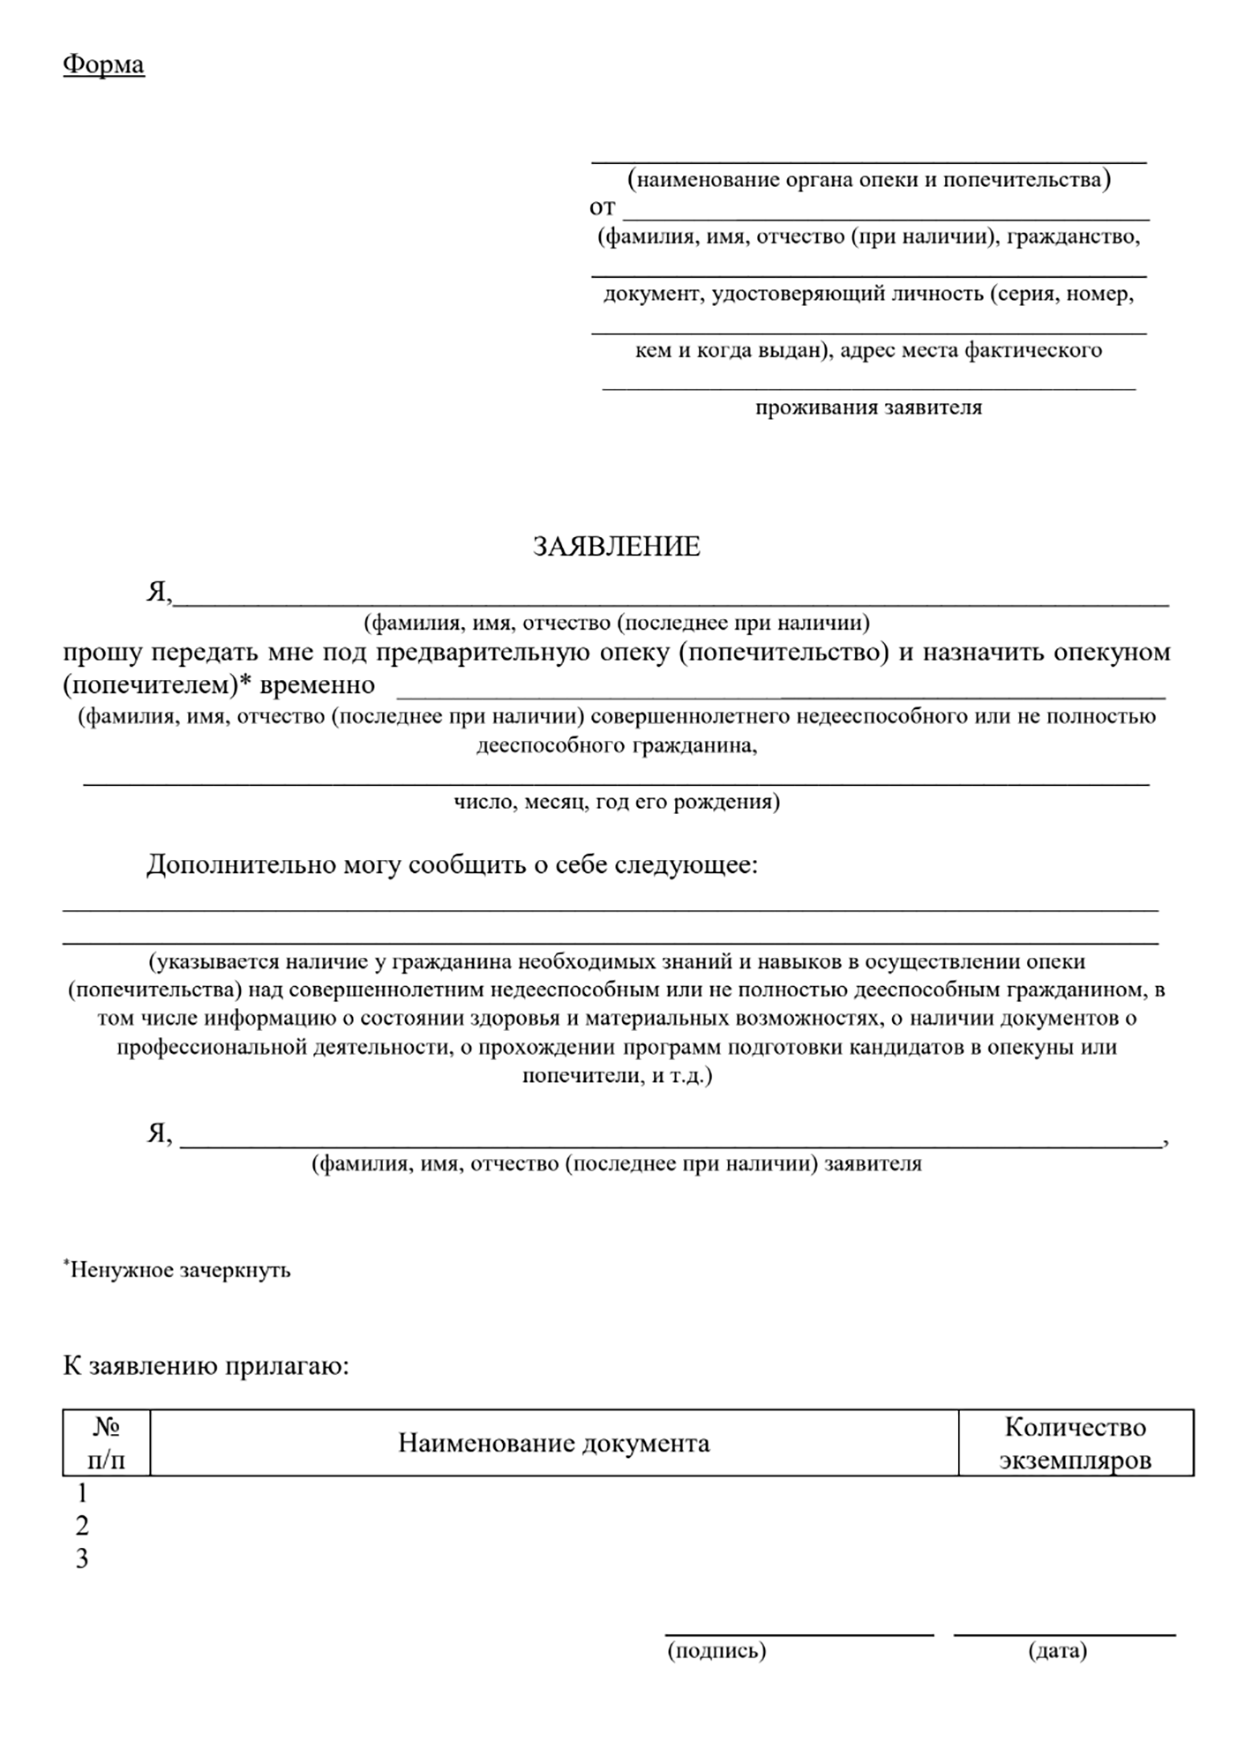 Так выглядел шаблон заявления на предварительное попечительство, когда я работала в органе опеки в Белгородской области